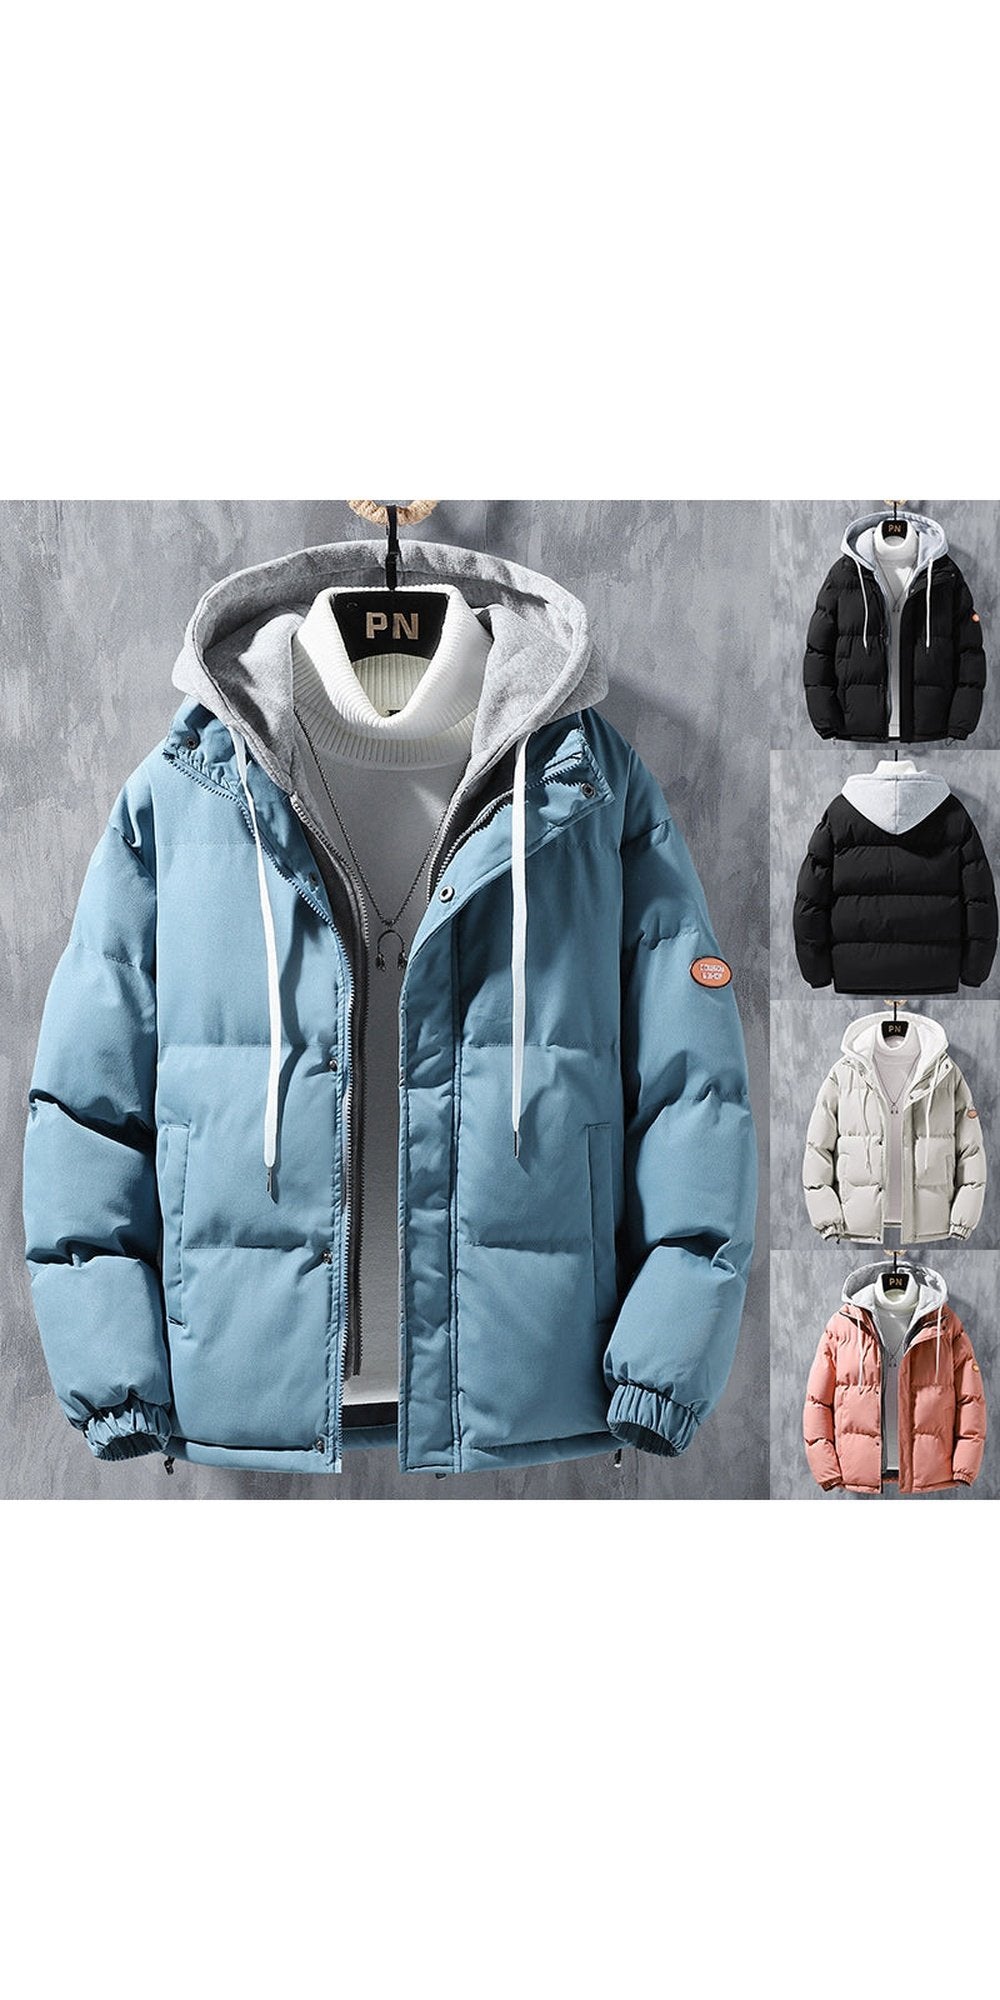 Stylish Cardigan Jacket - Winter Fashion | K-AROLE